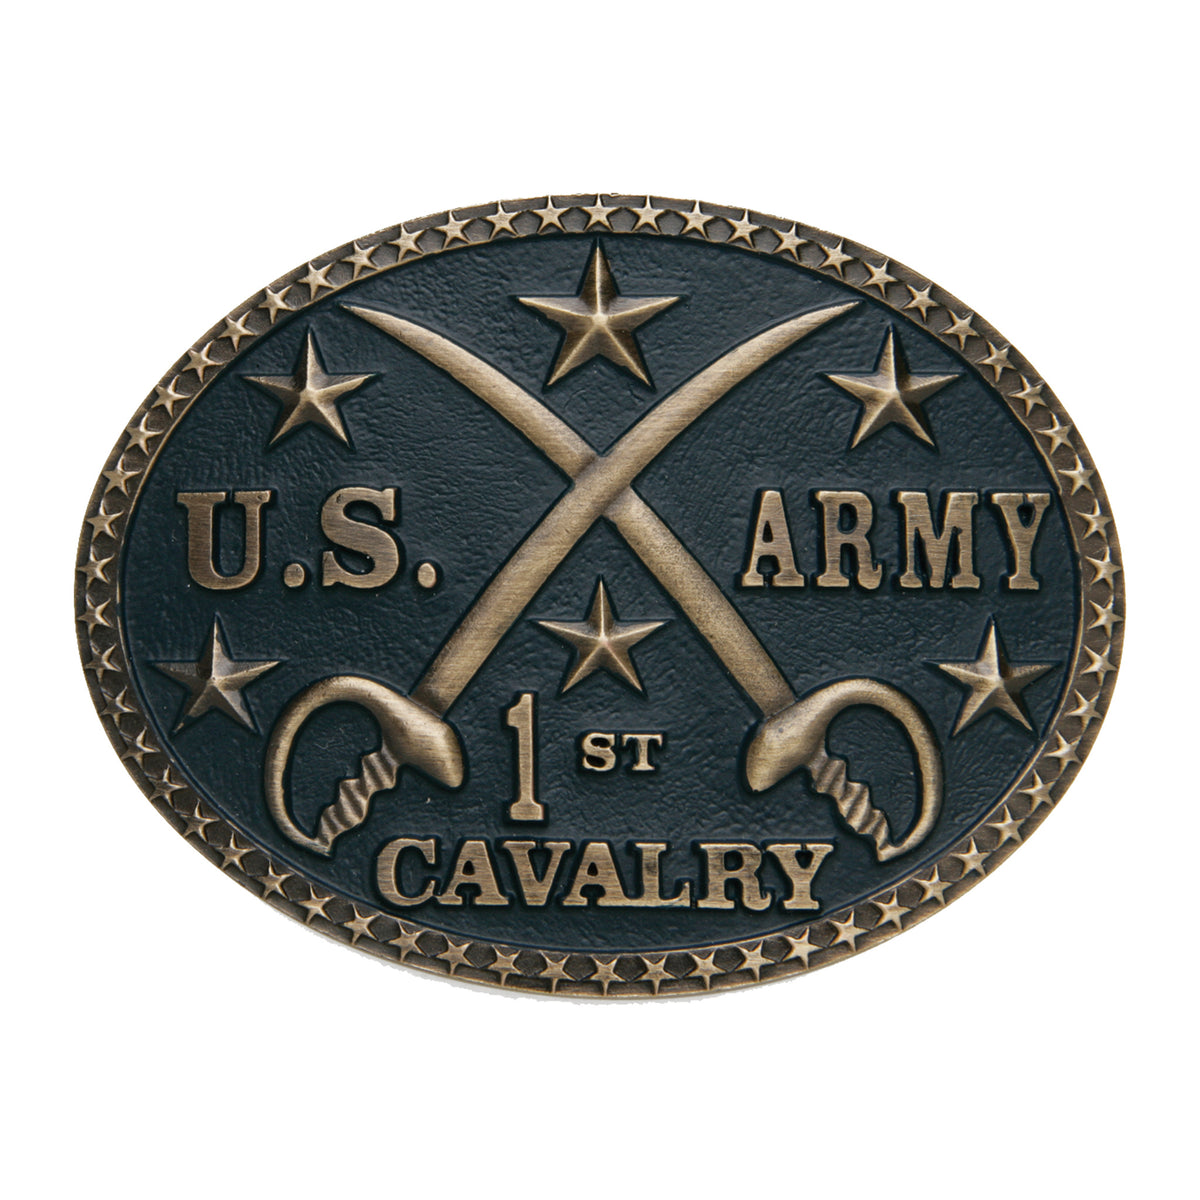 U.S. Army 1st. Cavalry Buckle